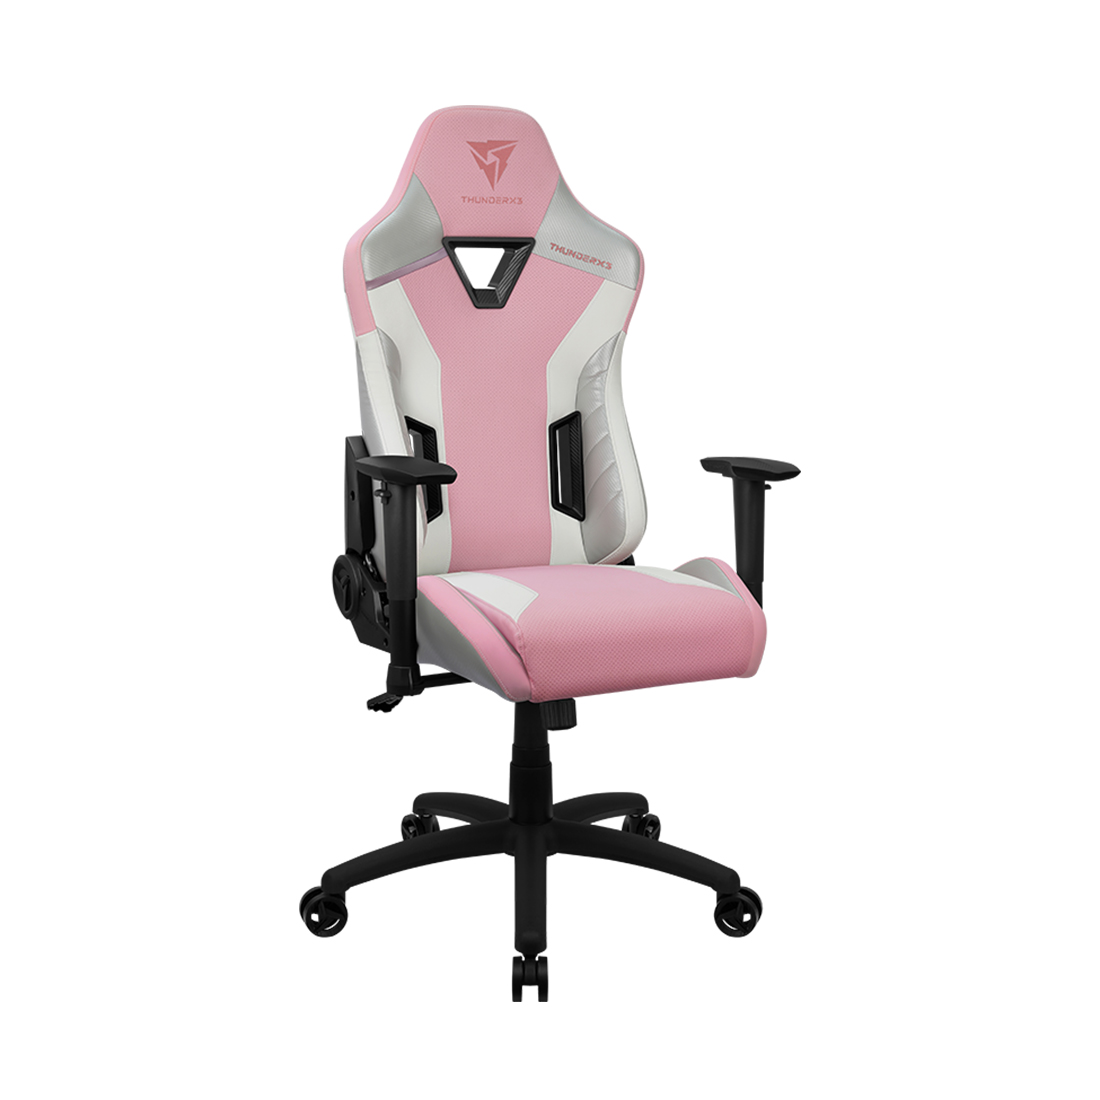 купить Игровое компьютерное кресло, ThunderX3, TC3 Sakura White, Искусственная кожа PU AIR, (Ш)65*(Г)70*(В)122(132) см, Бело-розовый в Алматы